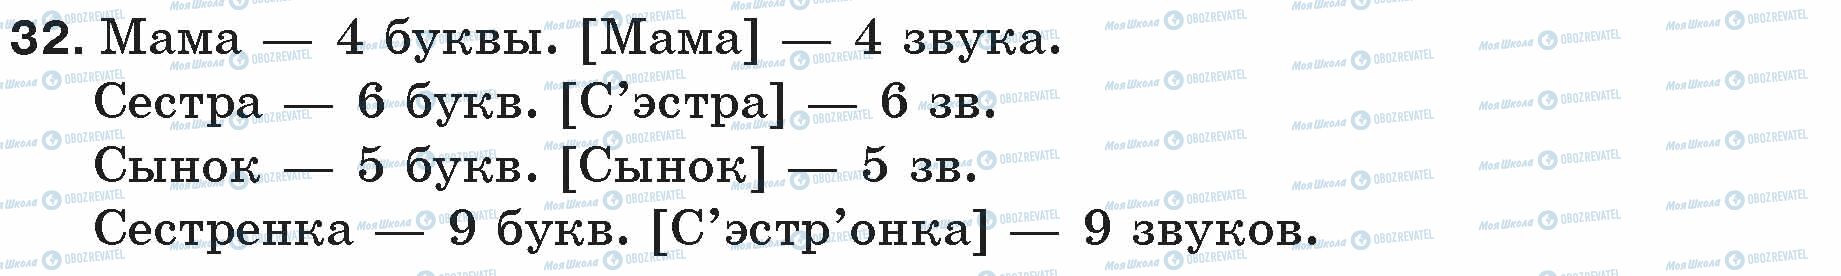 ГДЗ Русский язык 5 класс страница 32